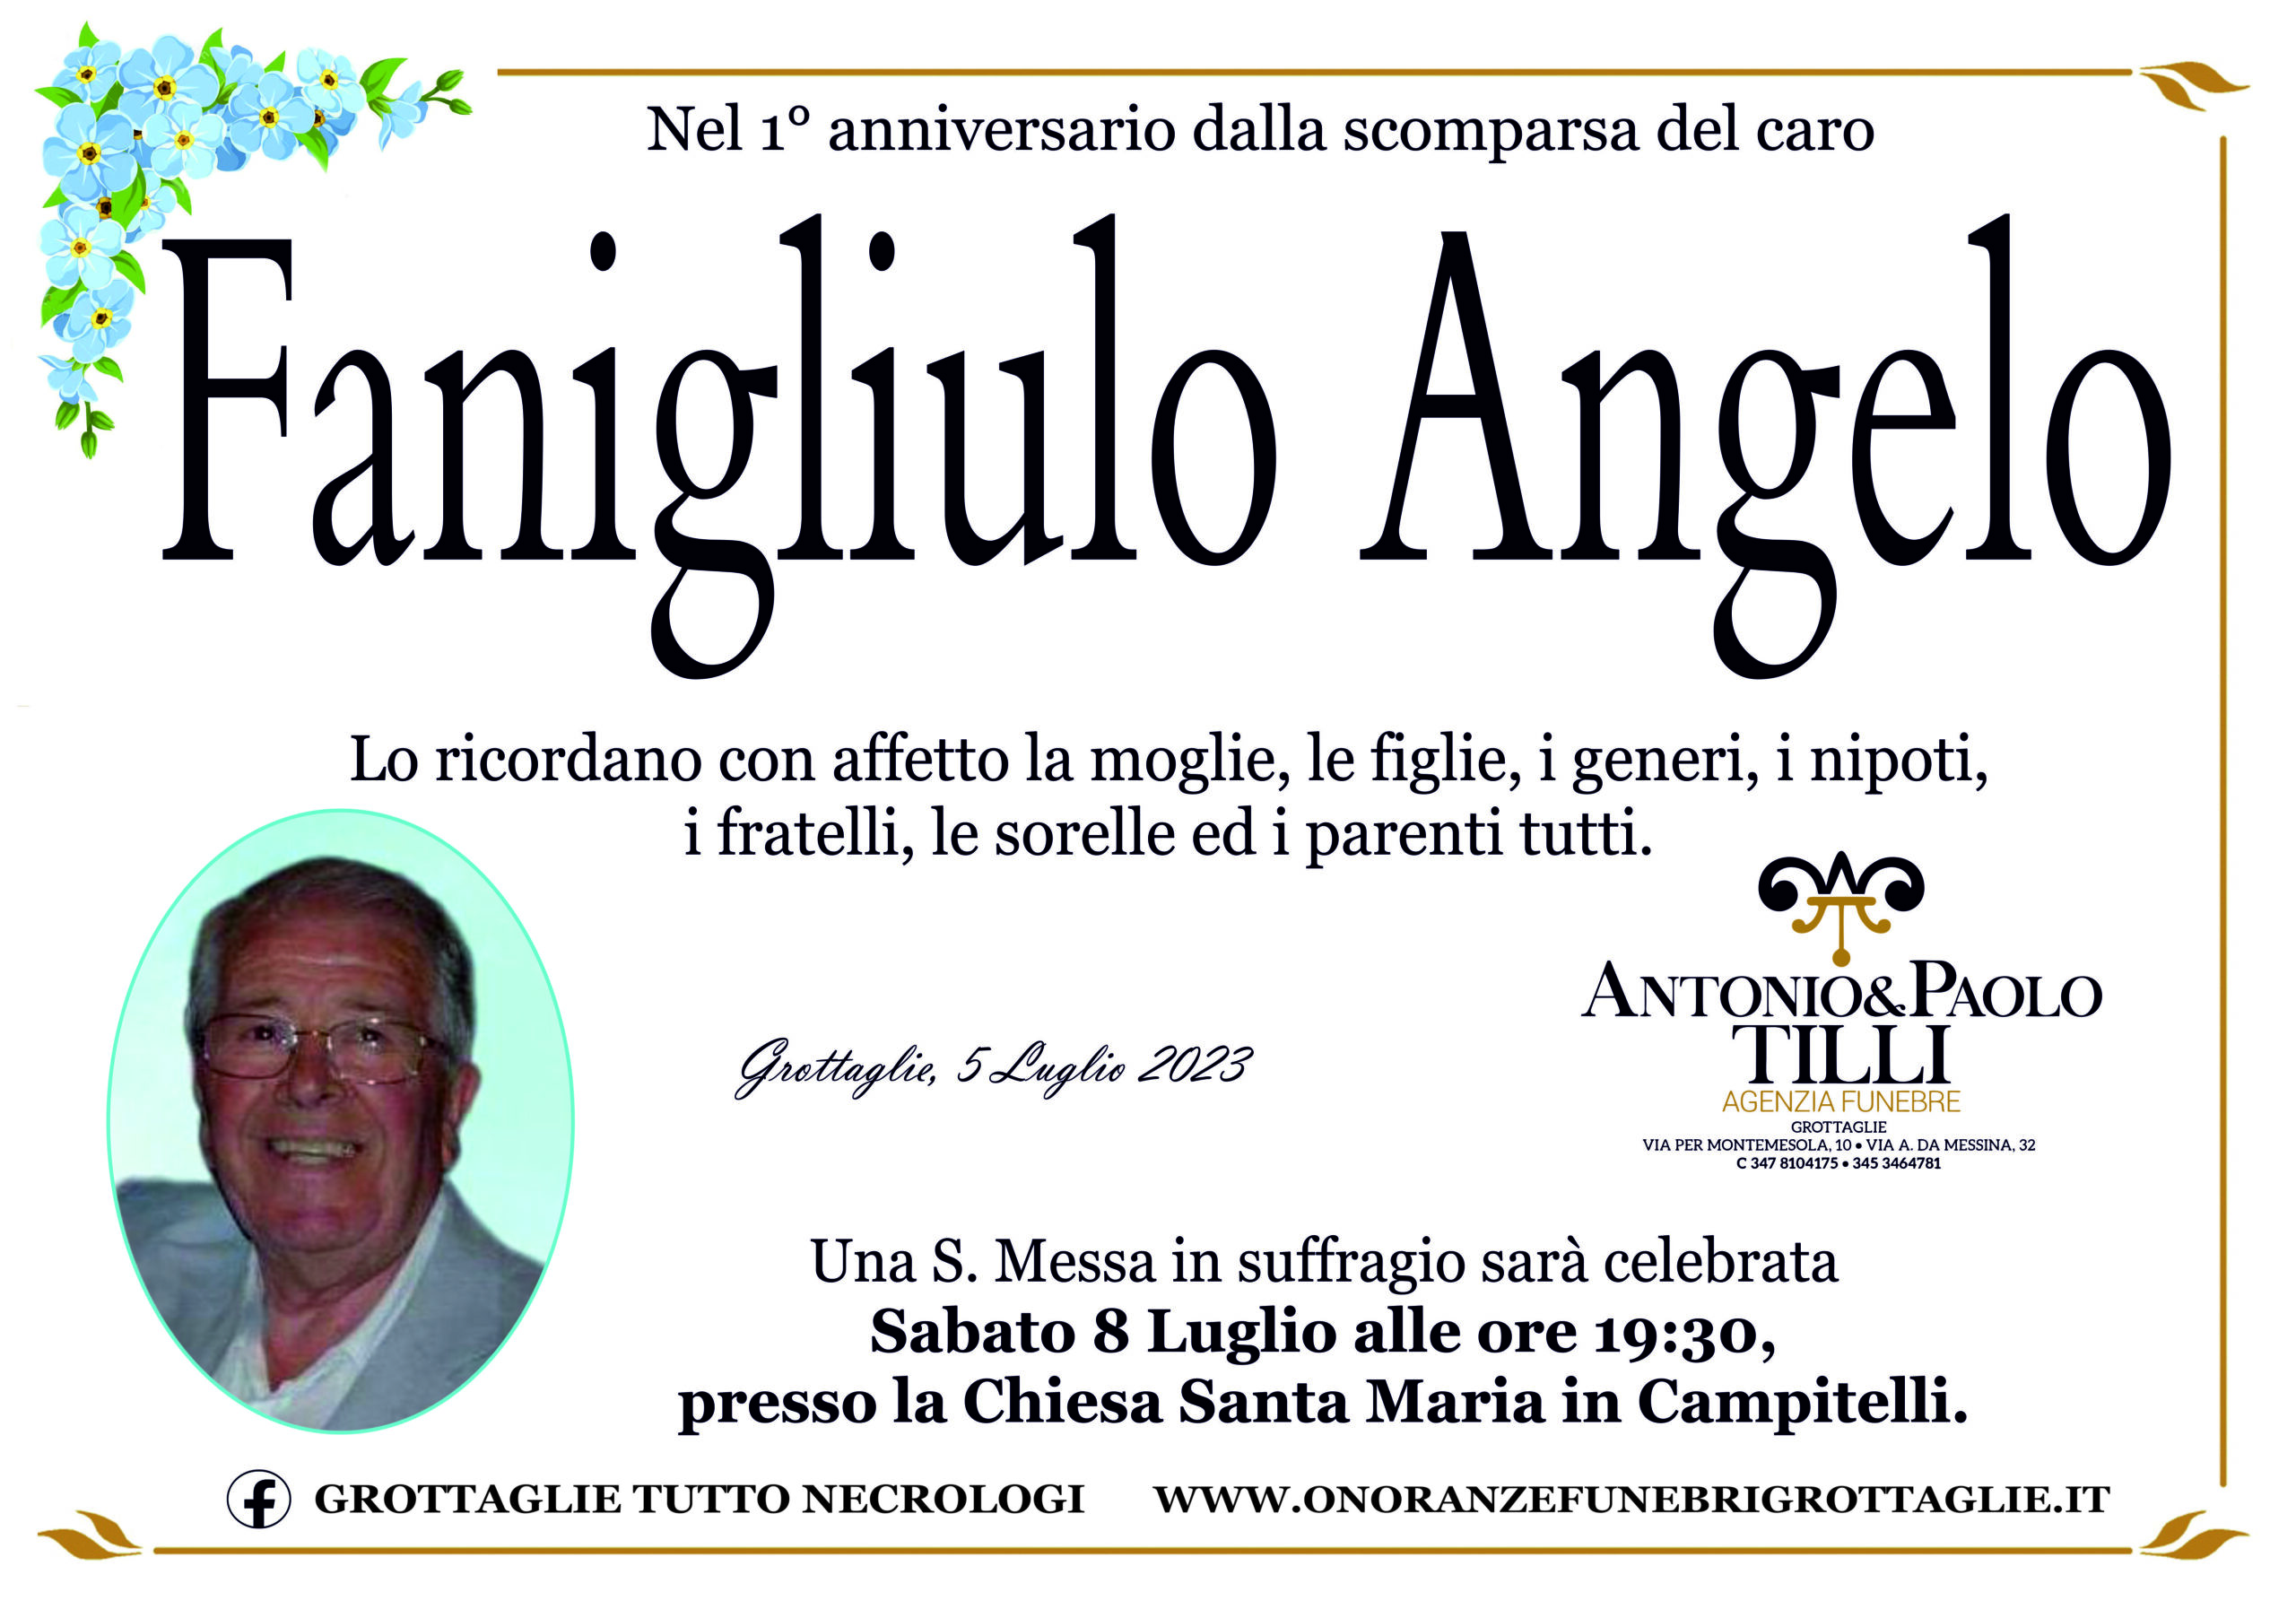 Ann. Fanigliulo Angelo